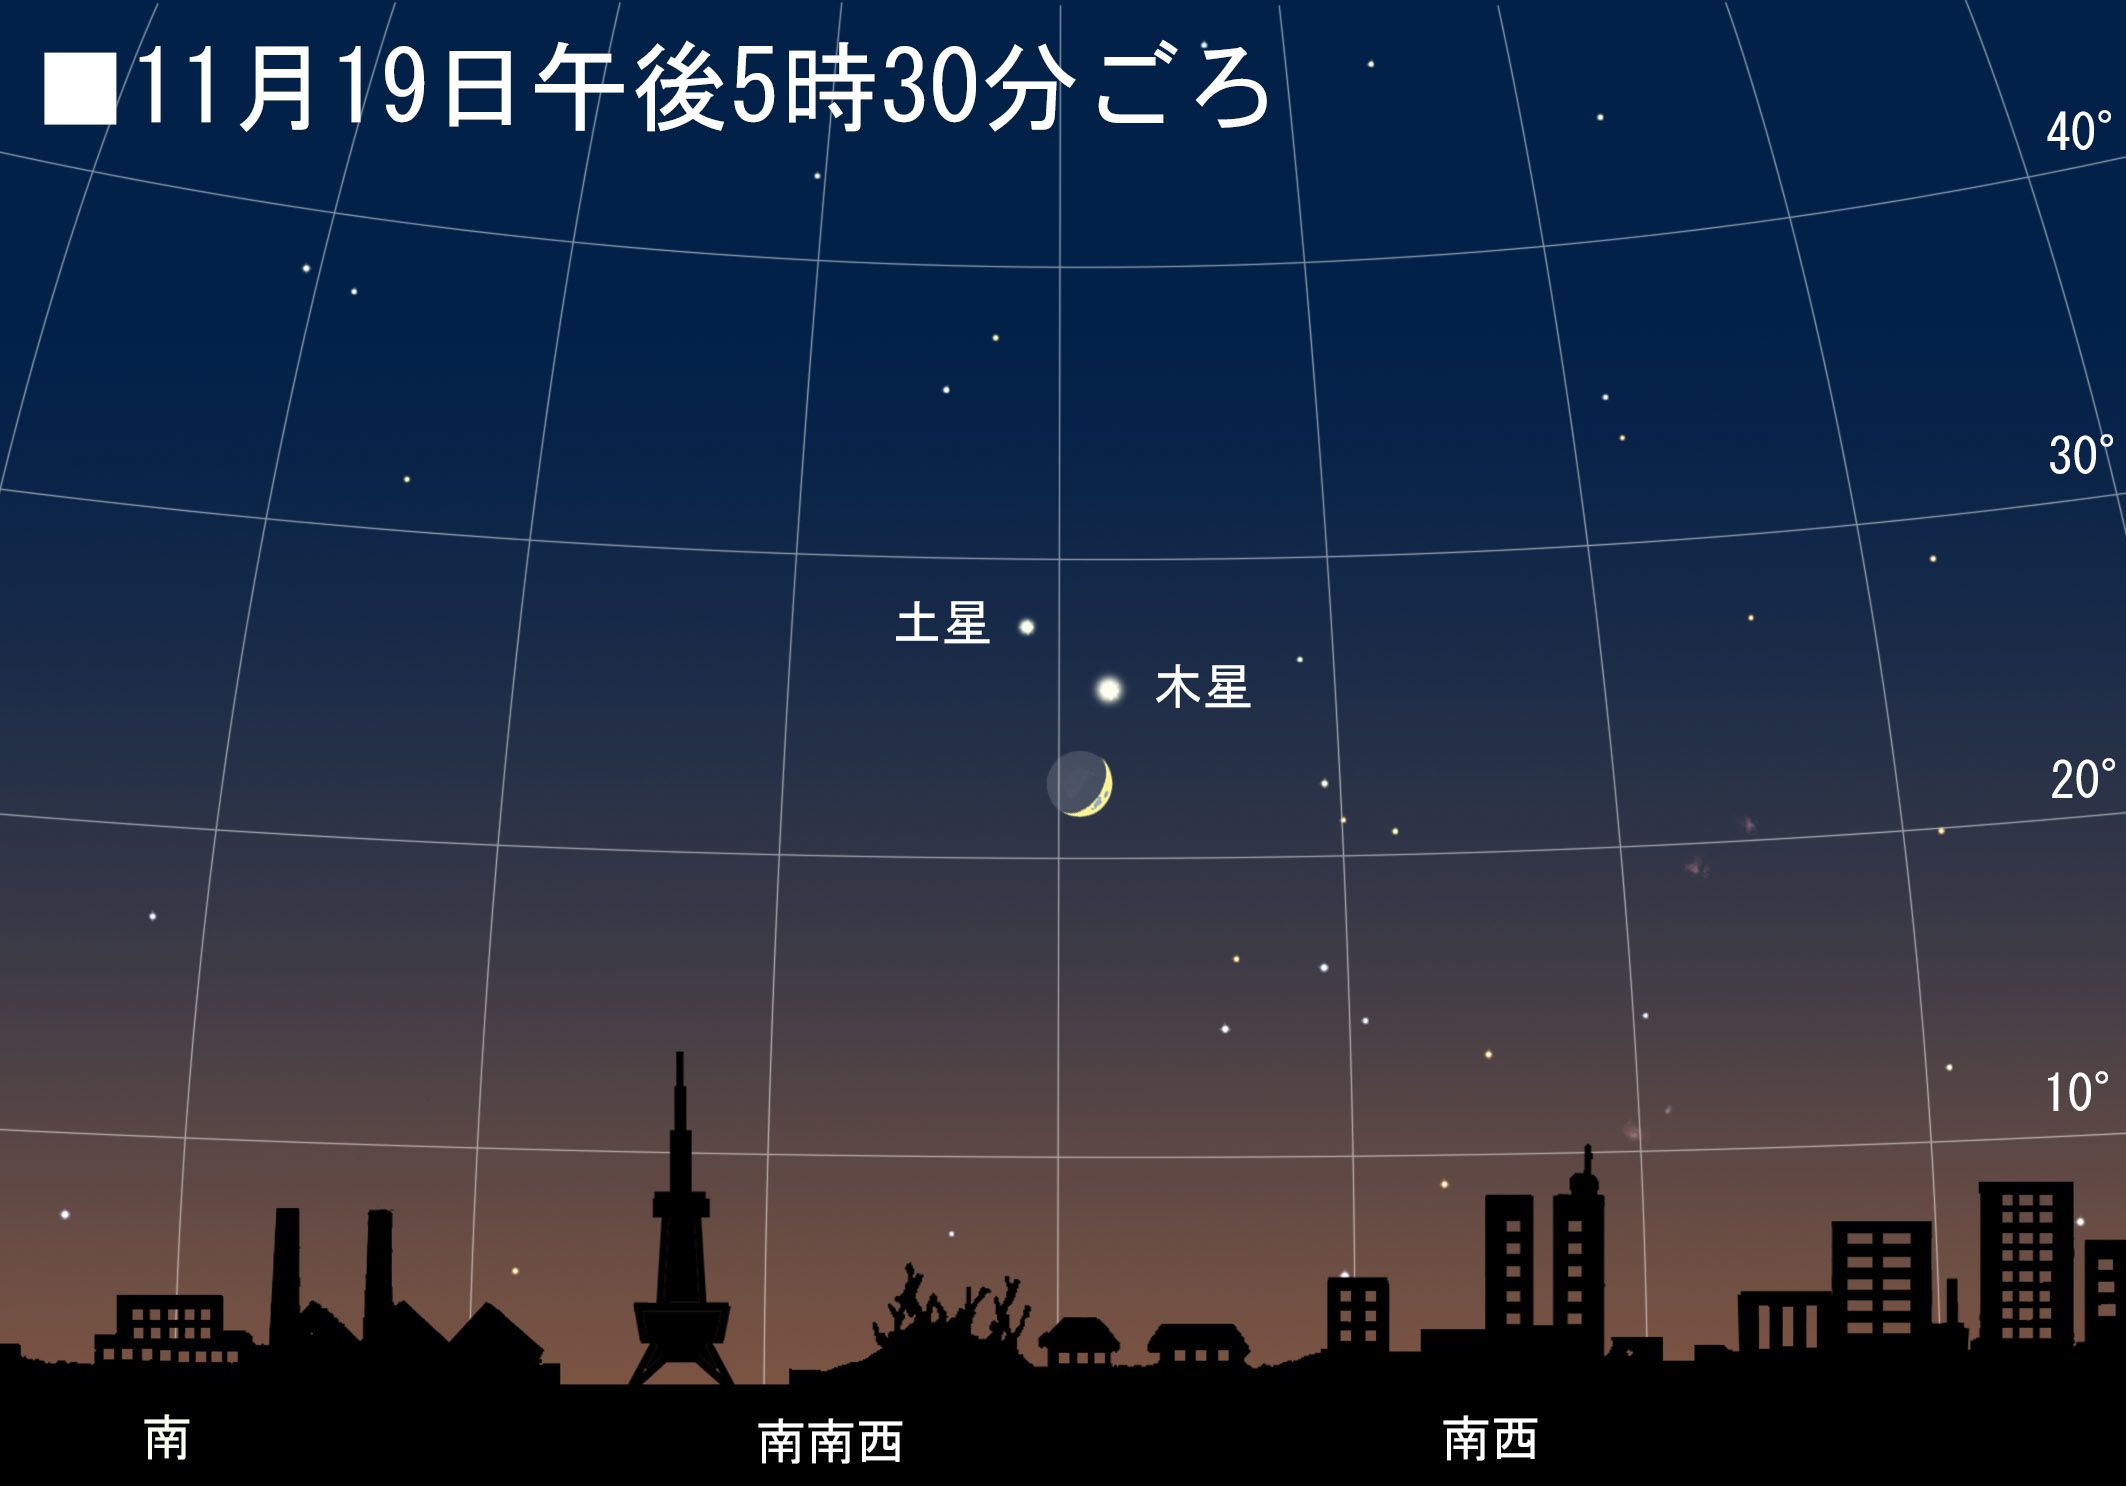 11月19日 月と木星と土星の競演 達人に訊け 中日新聞web